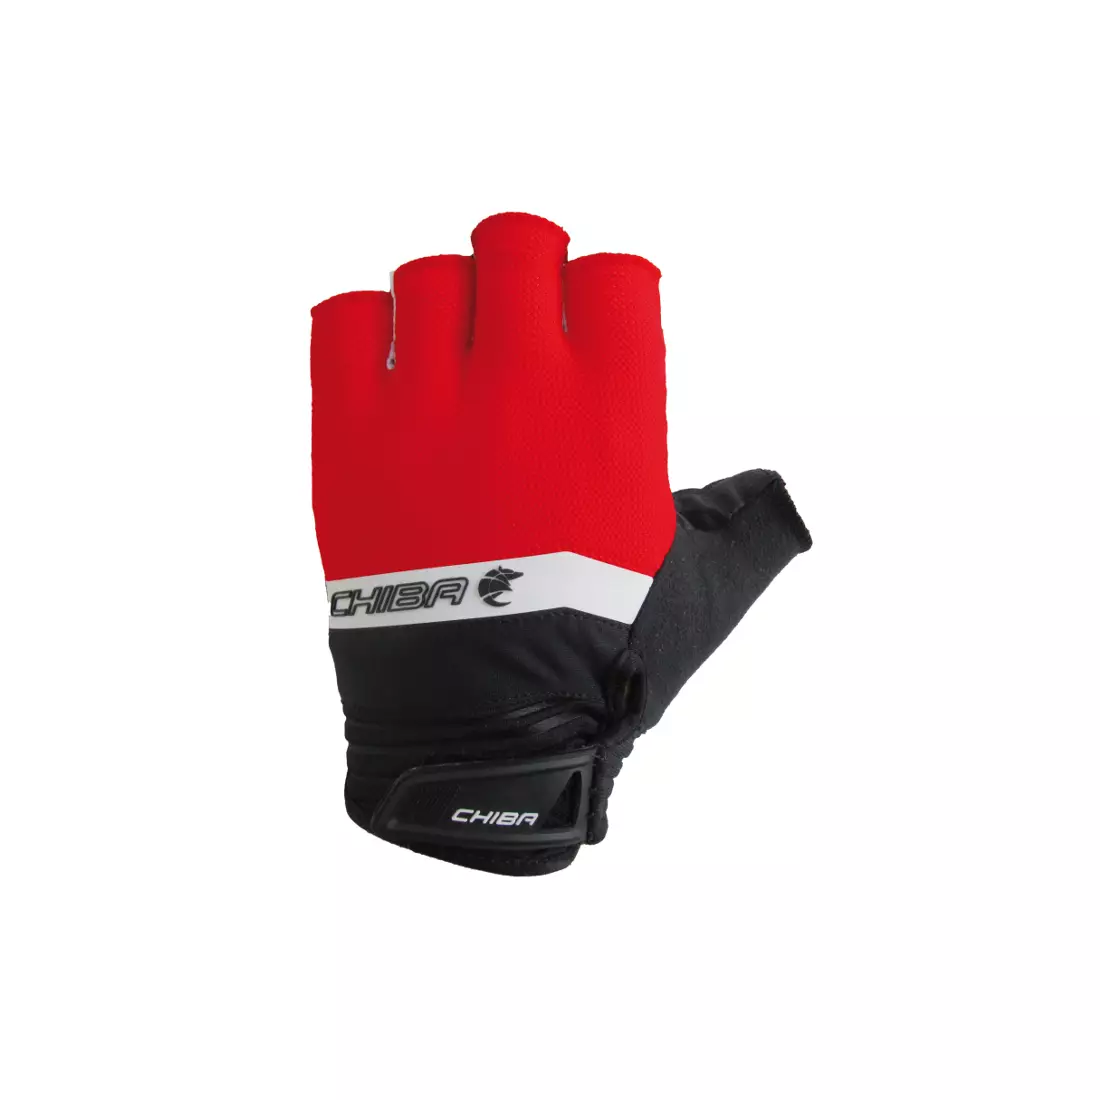 CHIBA AIR CRUISER cycling gloves, red